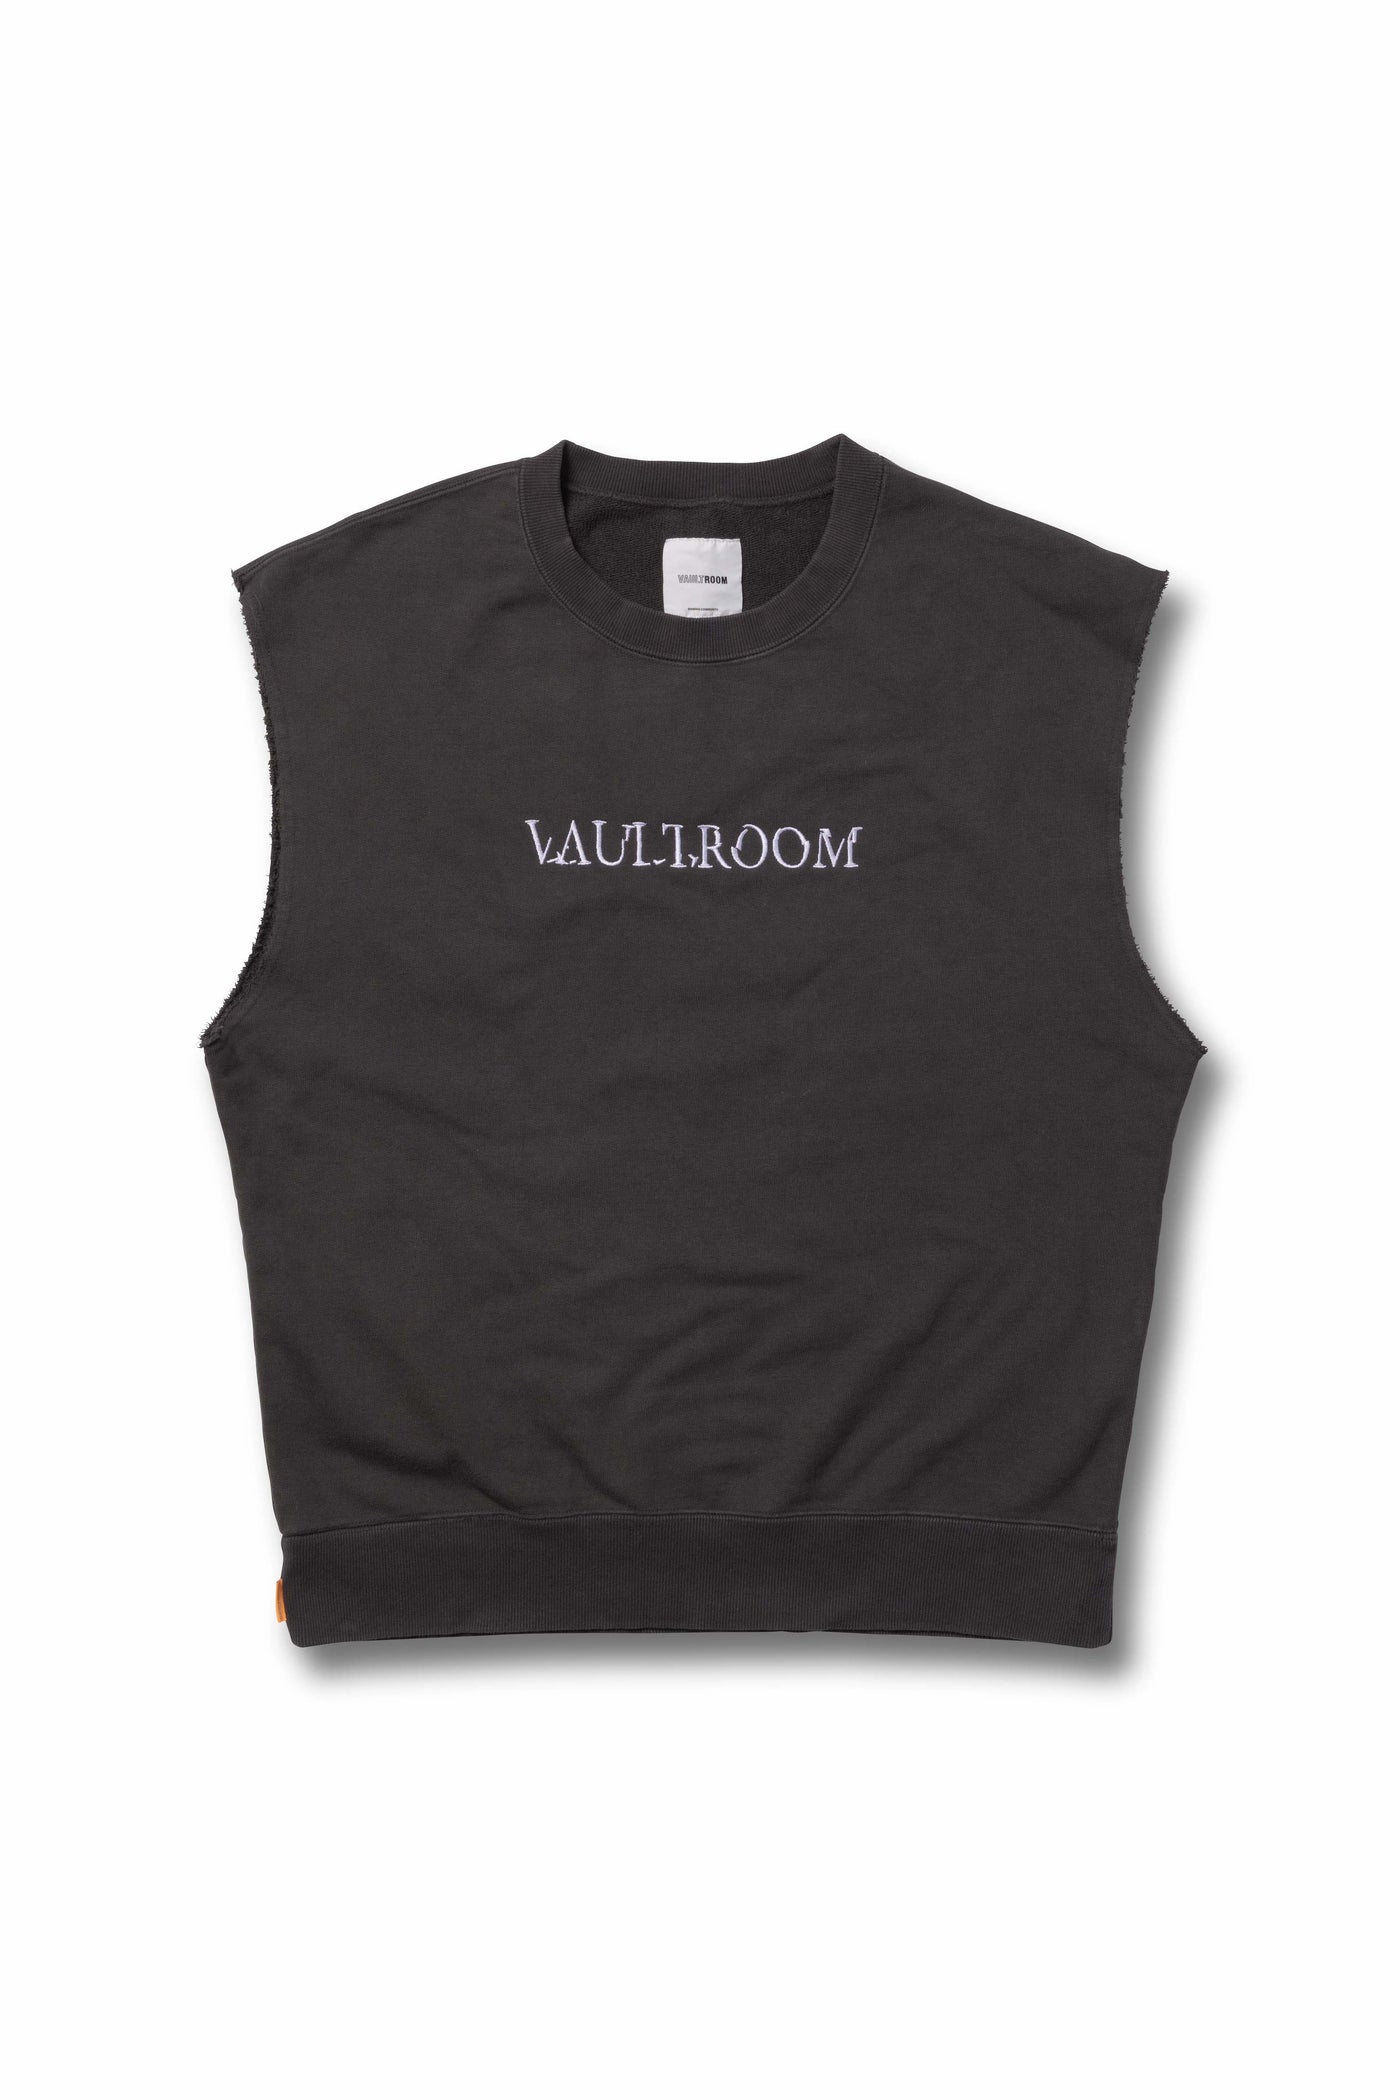 7,480円vaultroom CUTOFF VEST / CHARCOAL Lサイズ